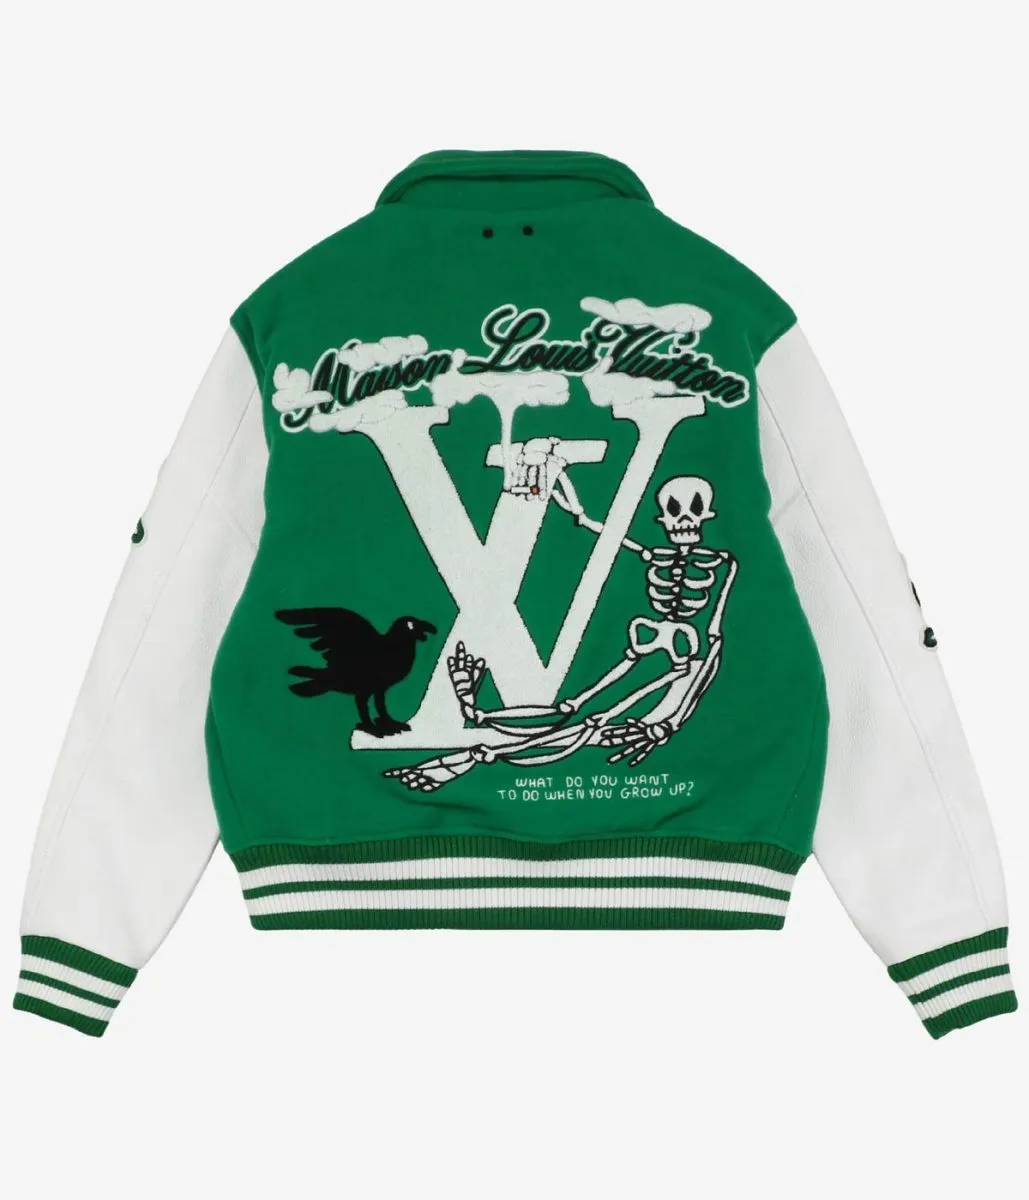 Celebrity Jacket Collection : Jay Z LV Jacket, Buy Now